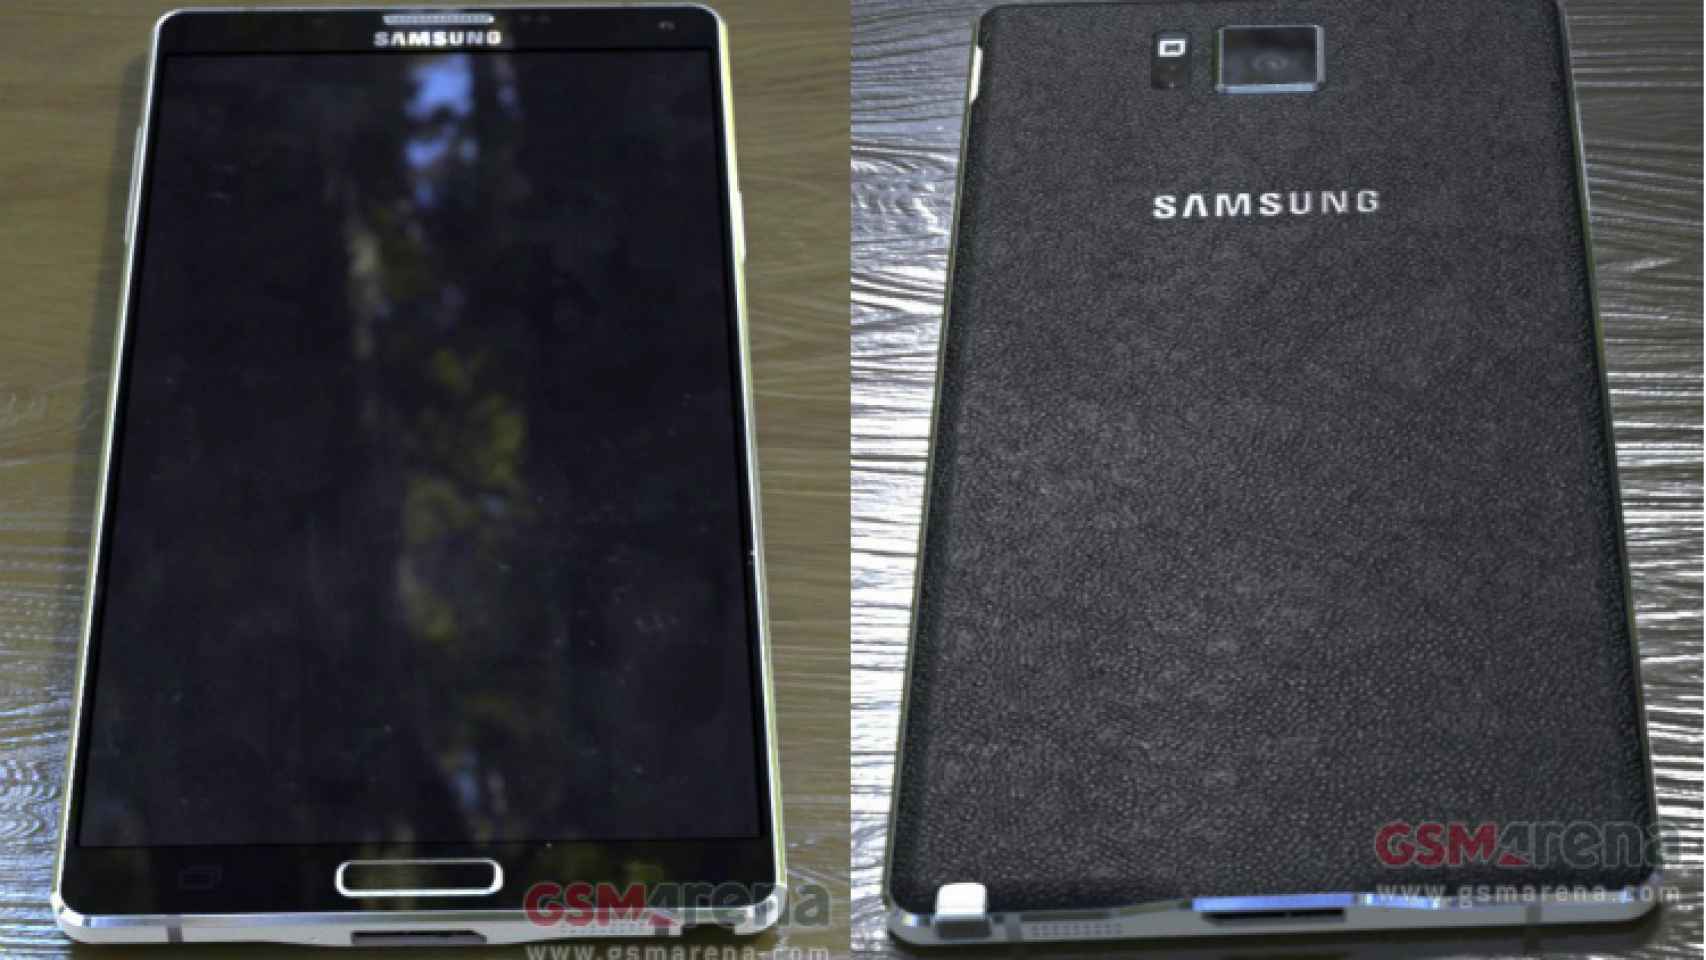 Primeras imágenes filtradas del Samsung Galaxy Note 4